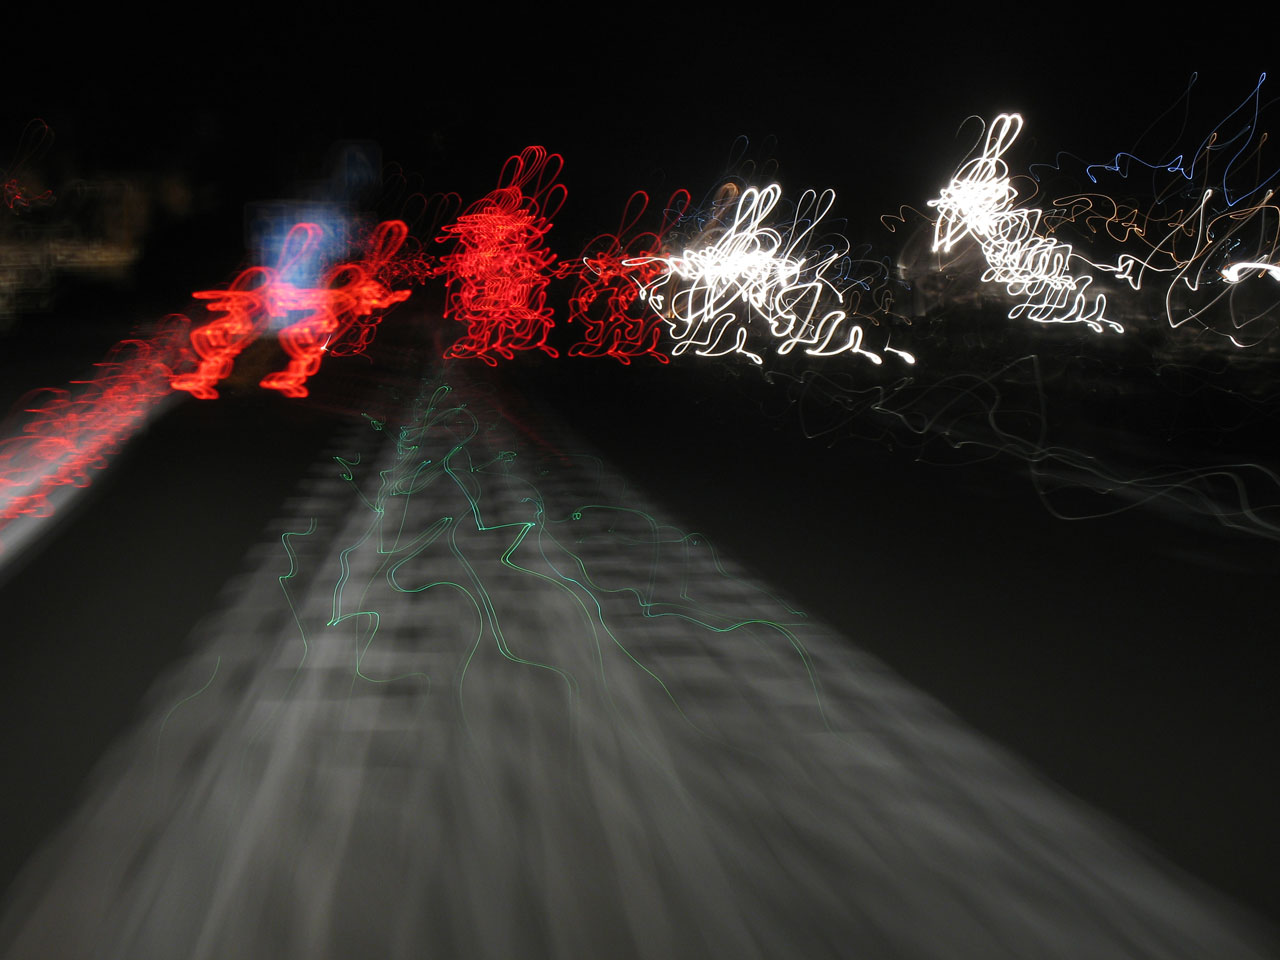 Auto-estrada à noite